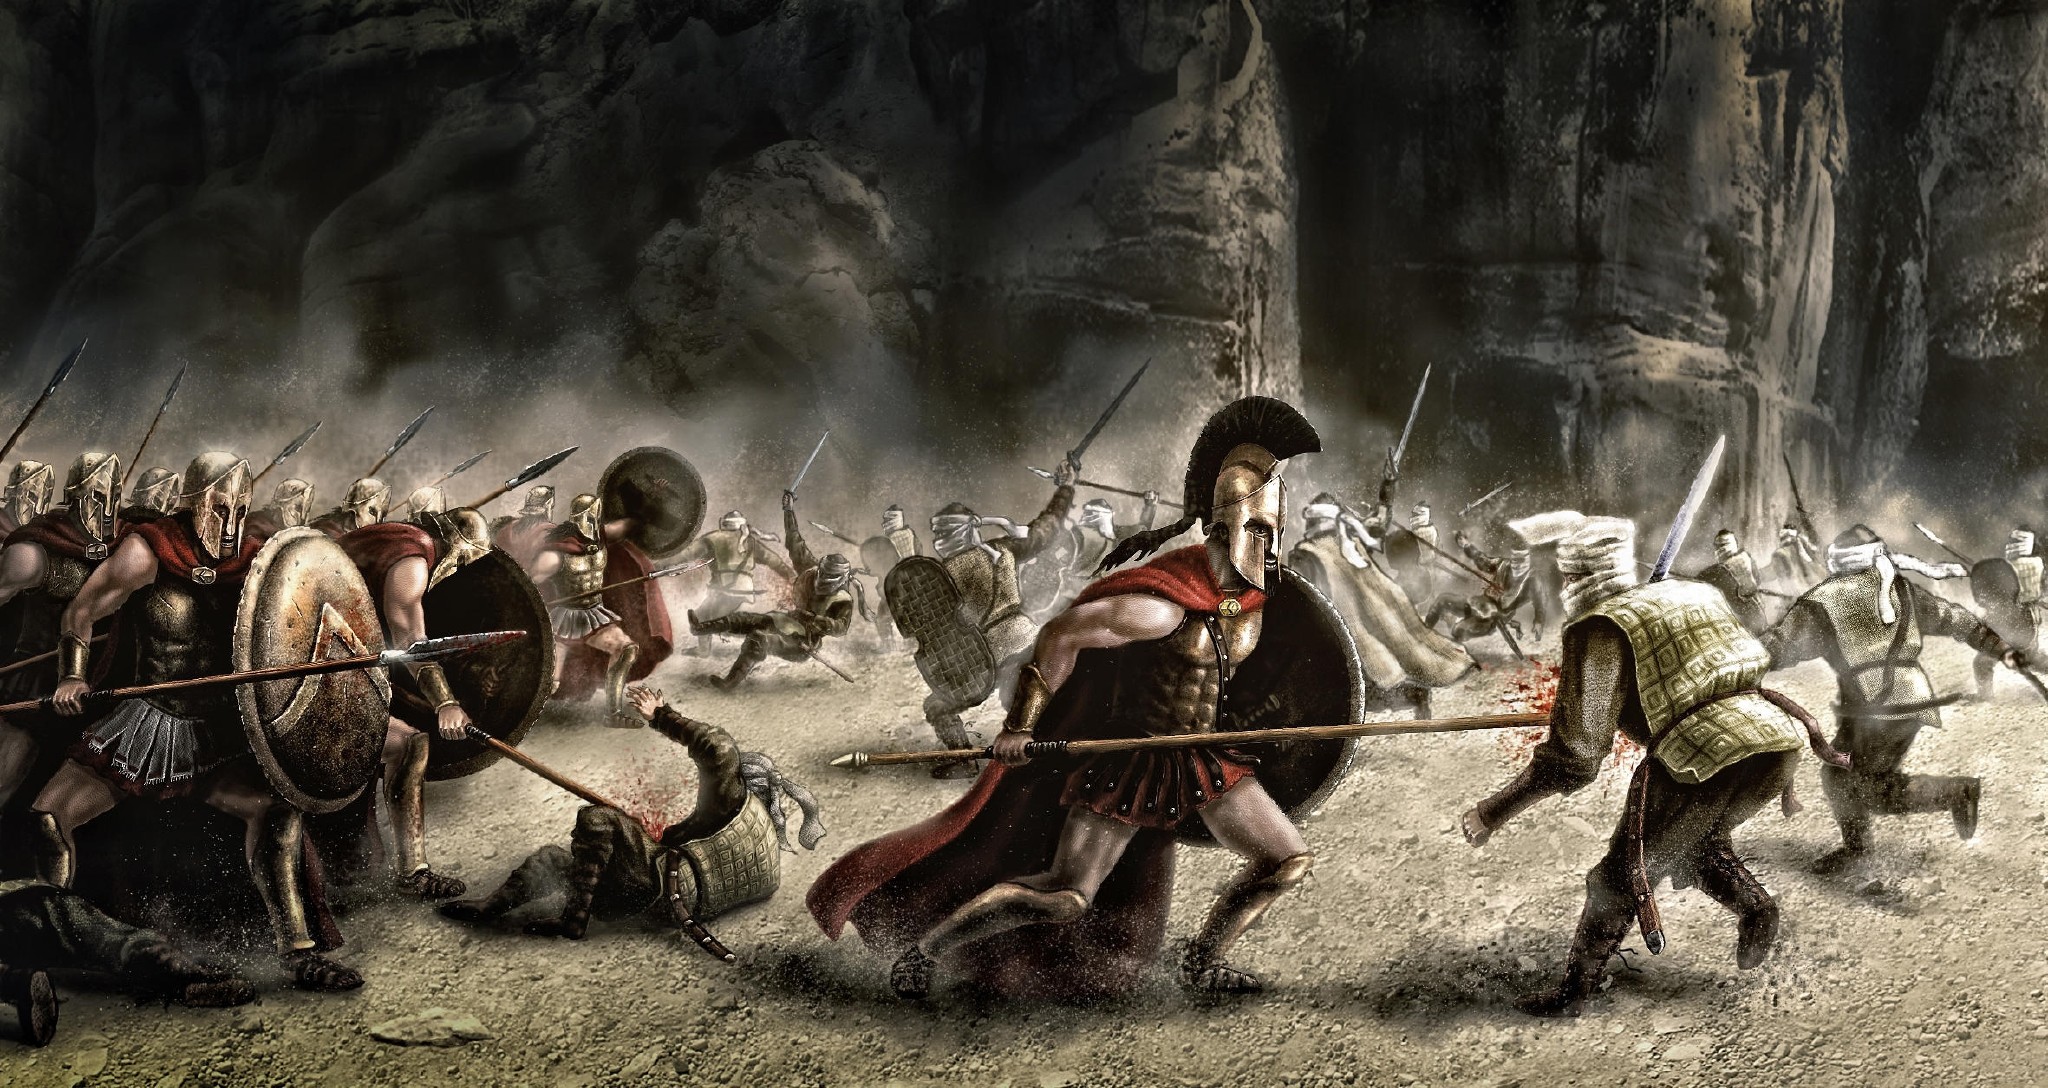 Alexios Spartan wallpaper by Nicolo69  Download on ZEDGE  5173